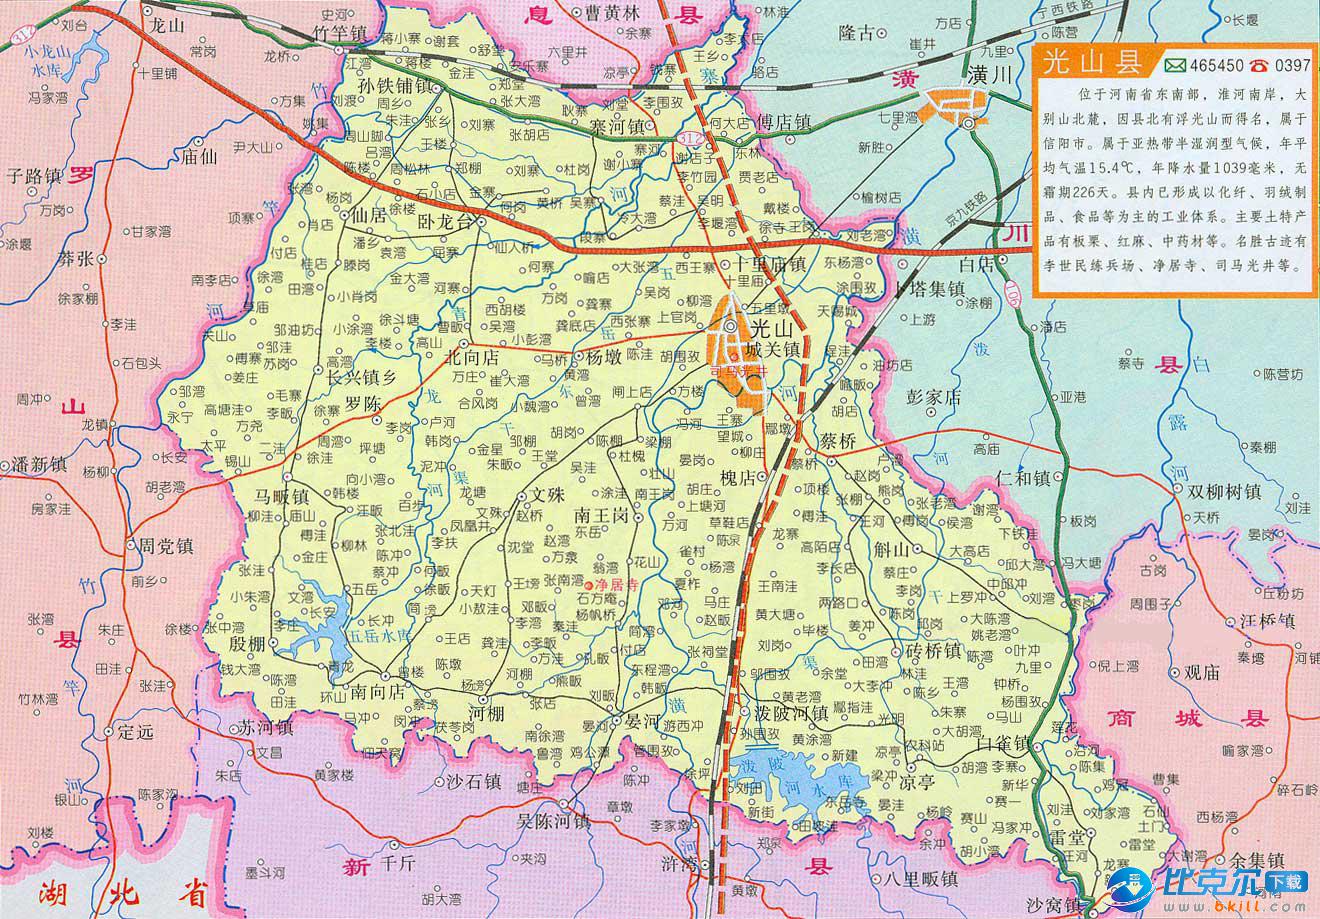 河南省光山县地图|光山县地图下载 绿色版 - 比克尔图片